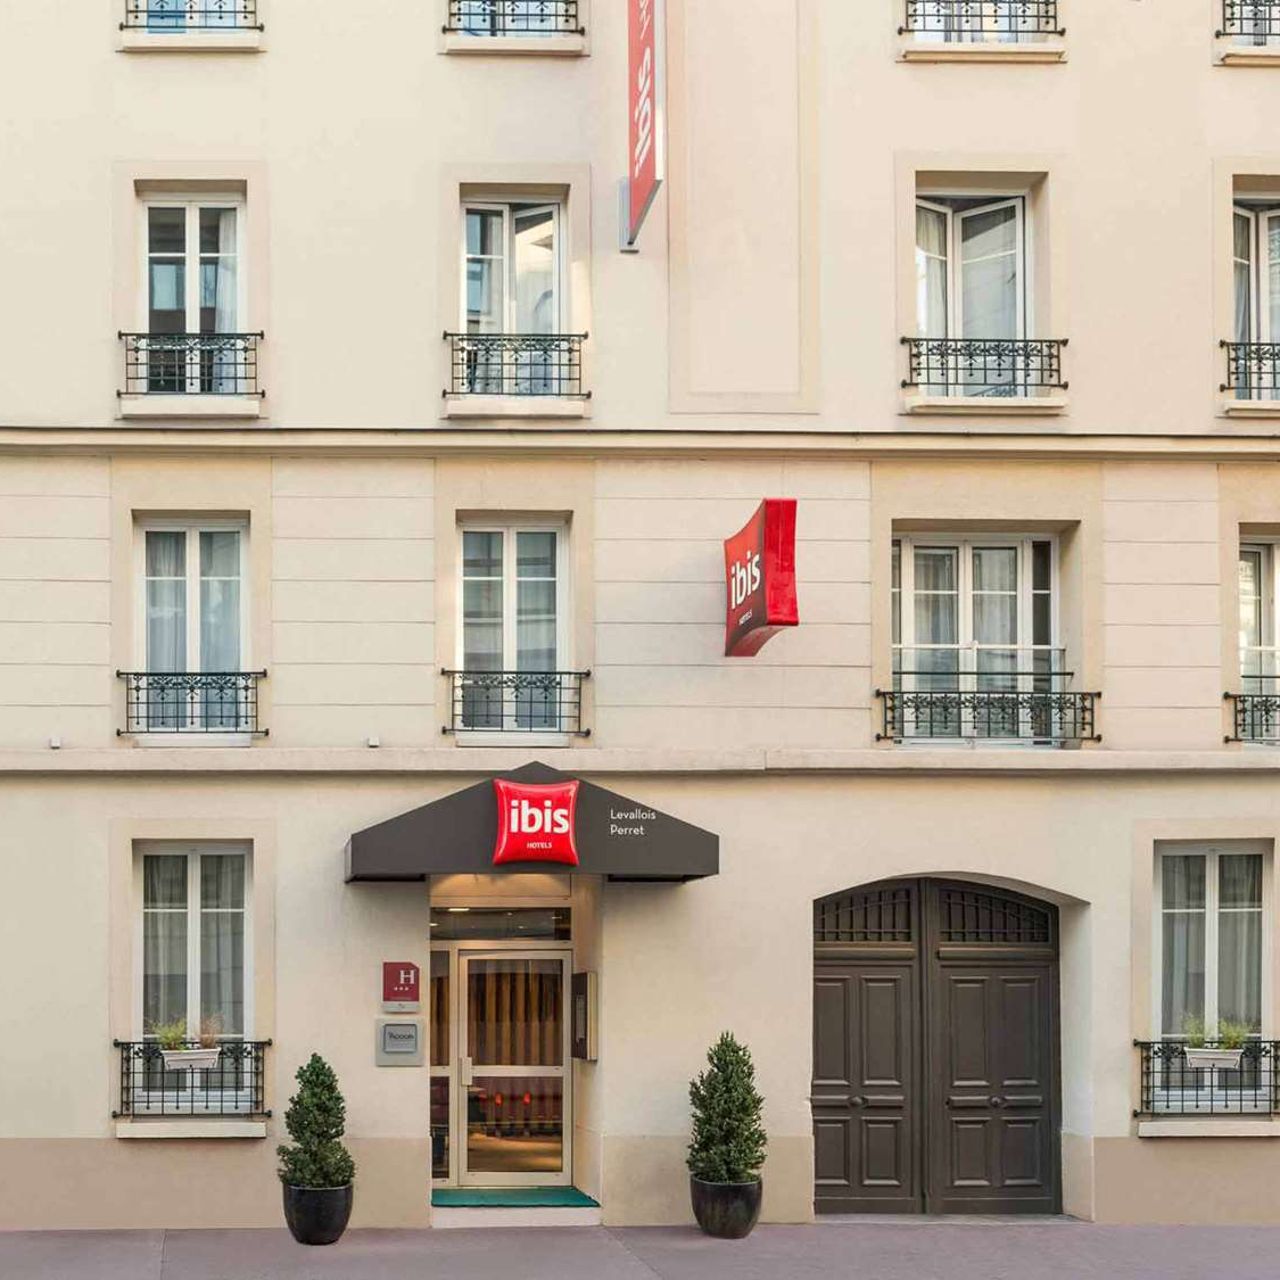 Hotel ibis Paris Levallois-Perret chez HRS avec services gratuits